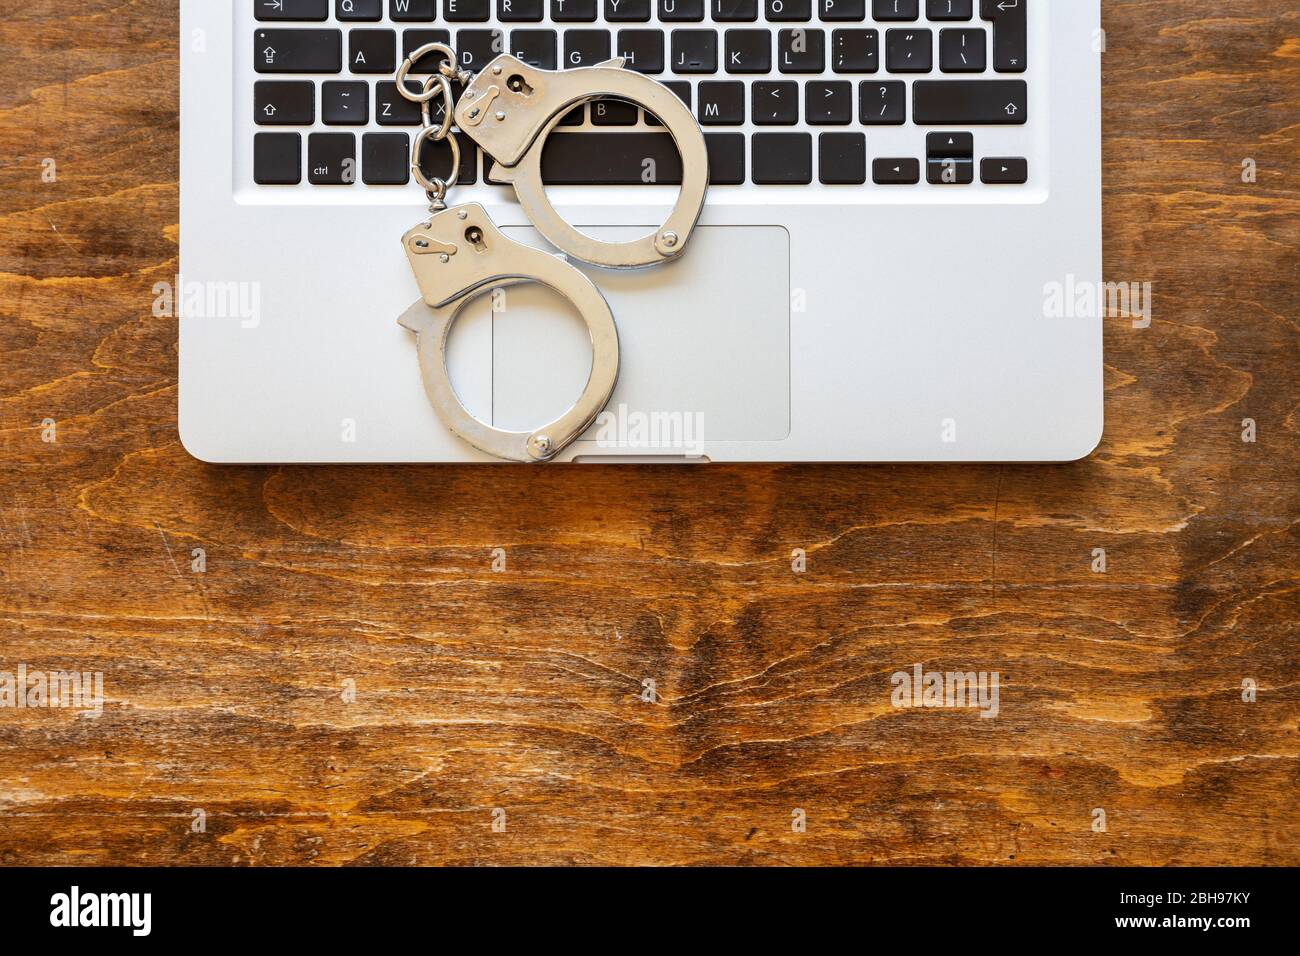 Handschellen auf einem Computer-Laptop, Hintergrund des hölzernen Bürotisches, Draufsicht. Cyberkriminalität, Hacker Arrest Konzept Stockfoto